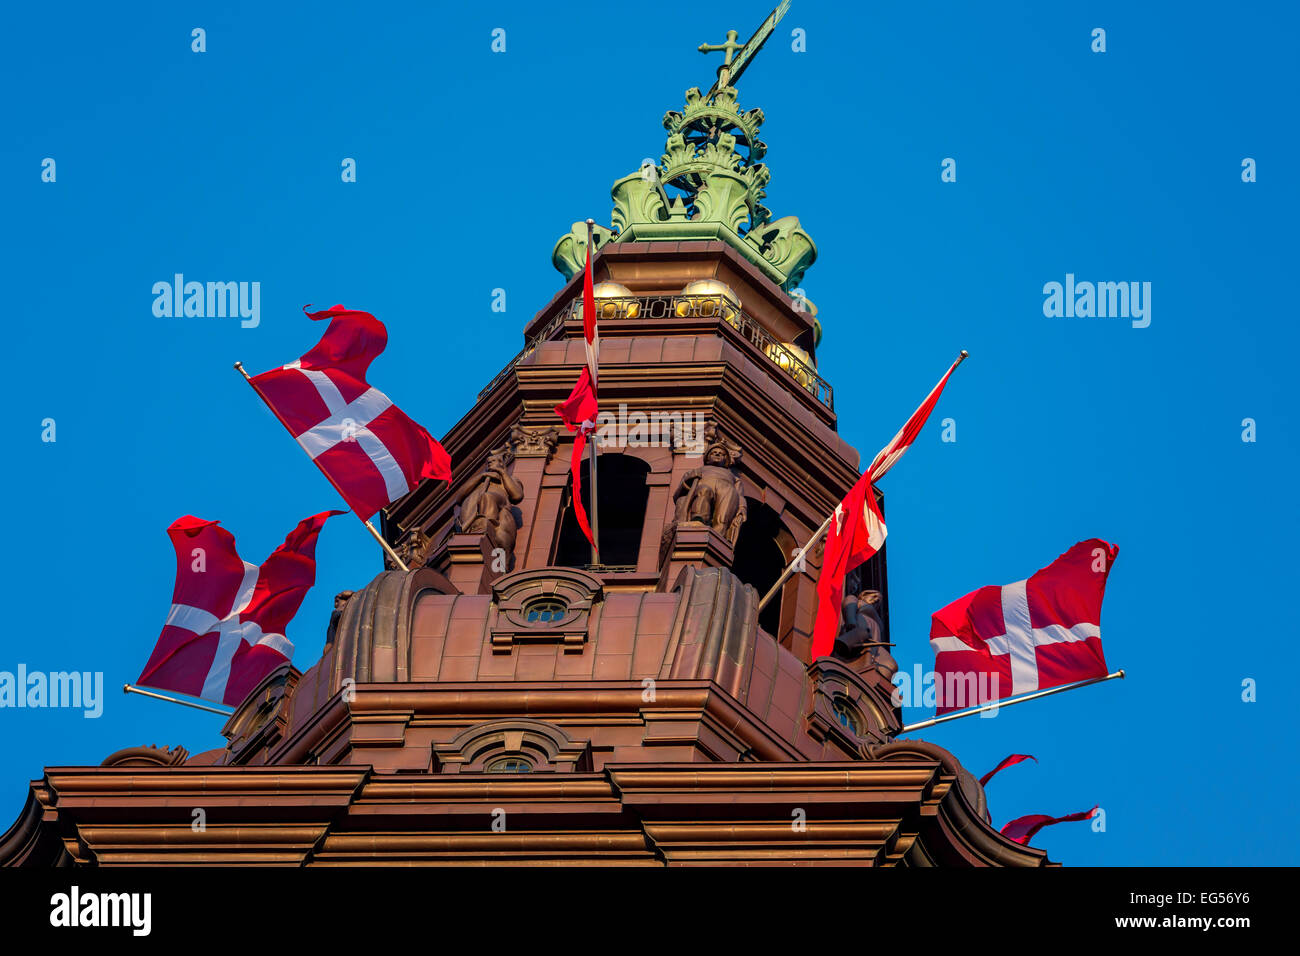 La flèche de Christianborg Palace, parlement danois Folketinget, Copenhague, Danemark Banque D'Images